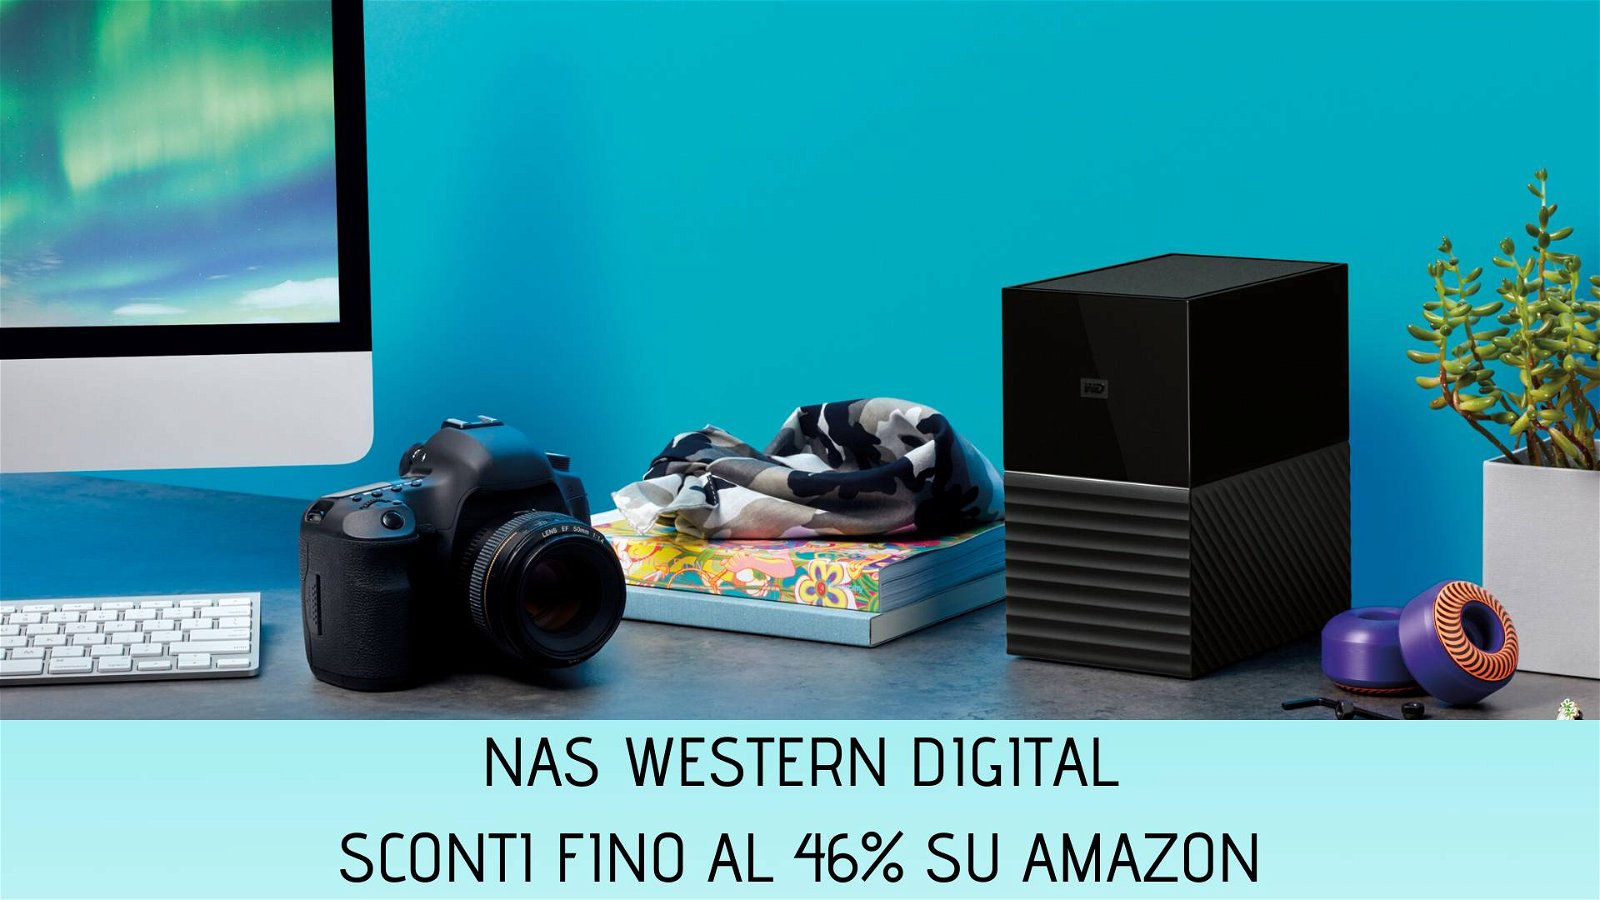 Immagine di Nas Western Digital, sconti fino al 46% su Amazon